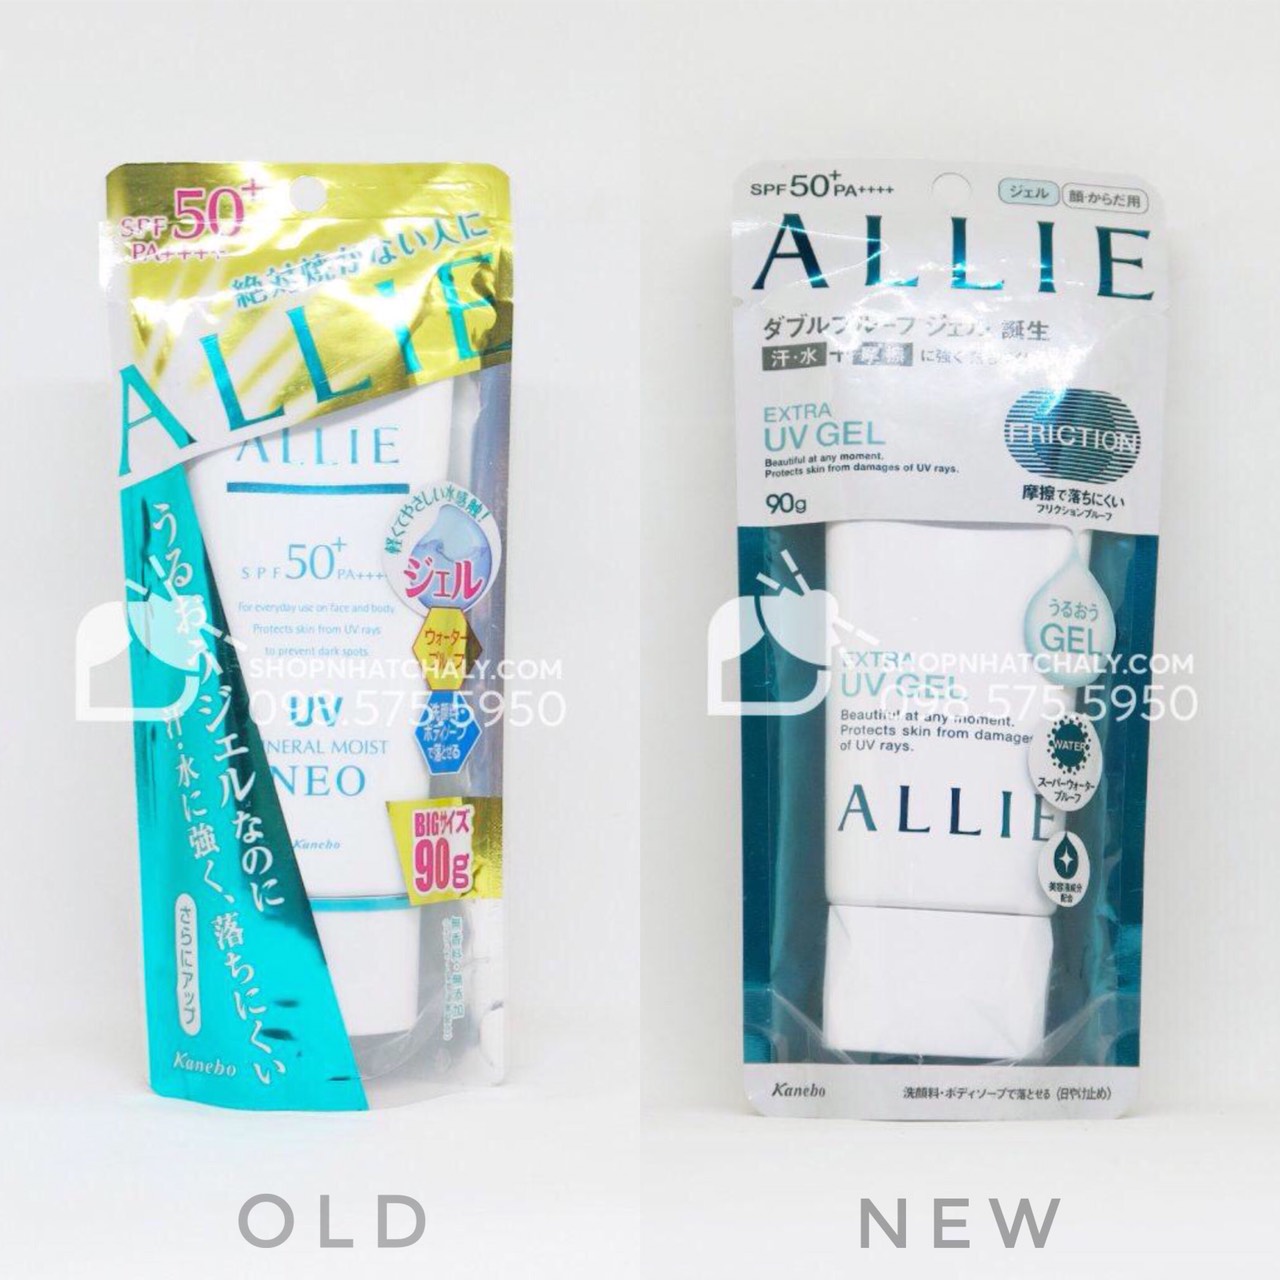 Kem chống nắng nhật Allie màu xanh mẫu trước đó. Phiên bản cũ bên trái tên là kem chống nắng Kanebo Allie Mineral Moist Neo